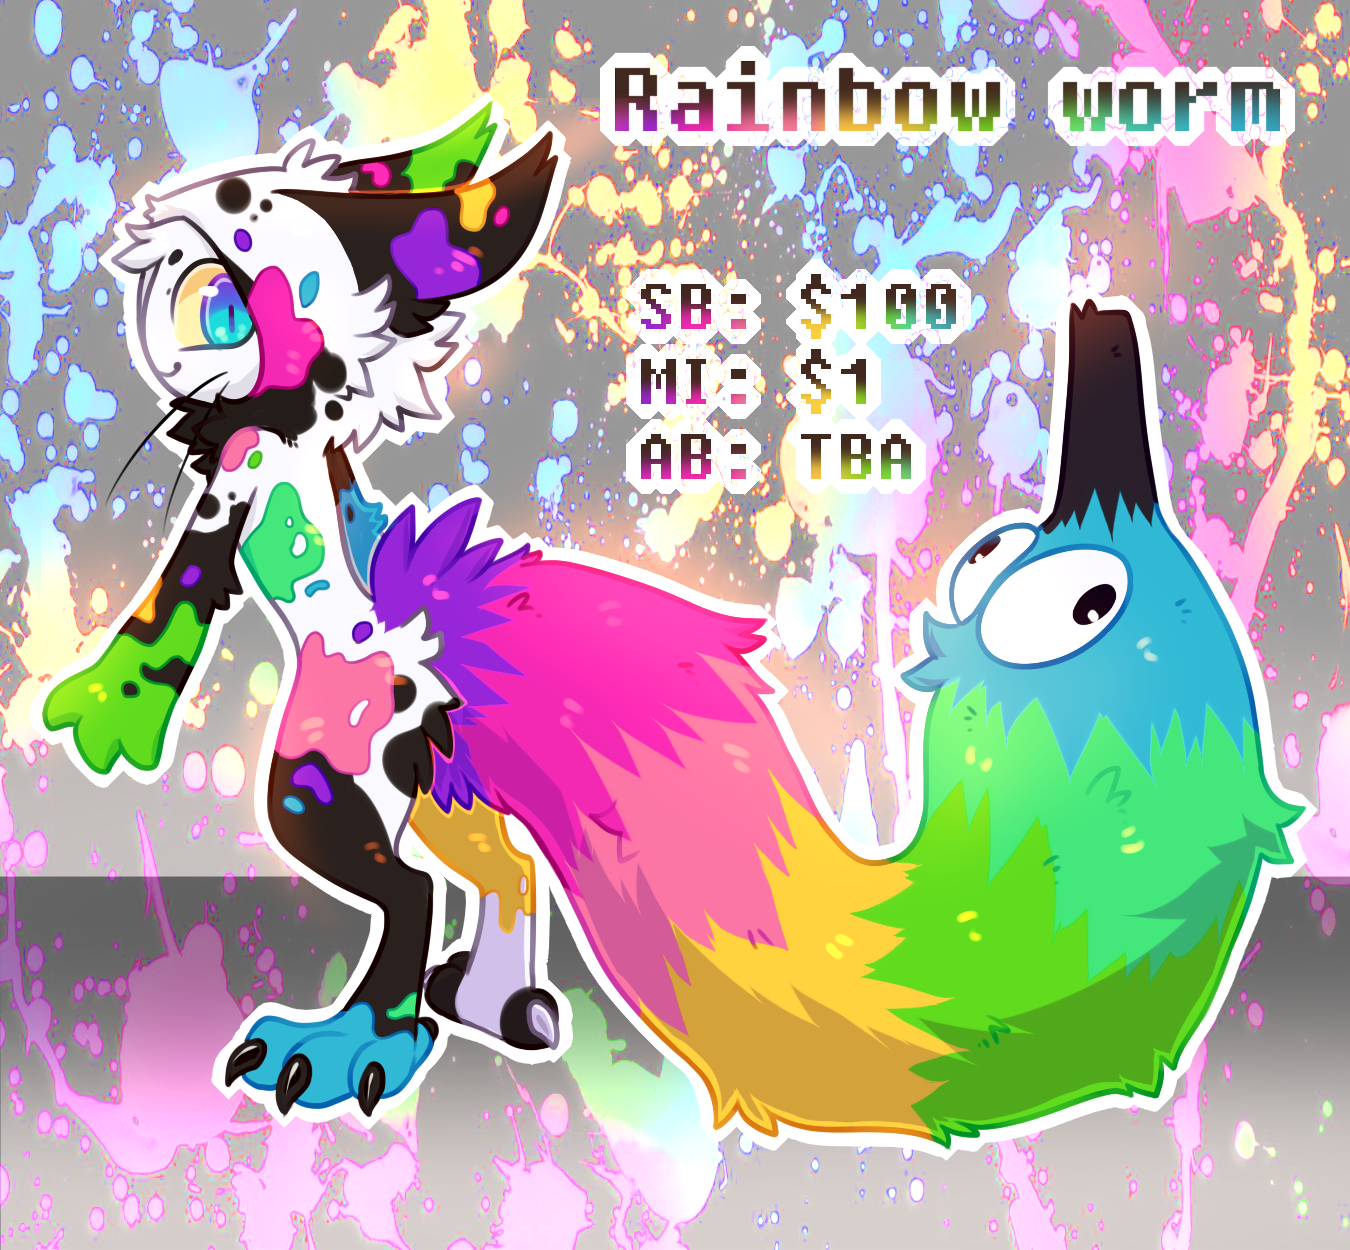 Rainbow worm Impim auction [CLOSED]